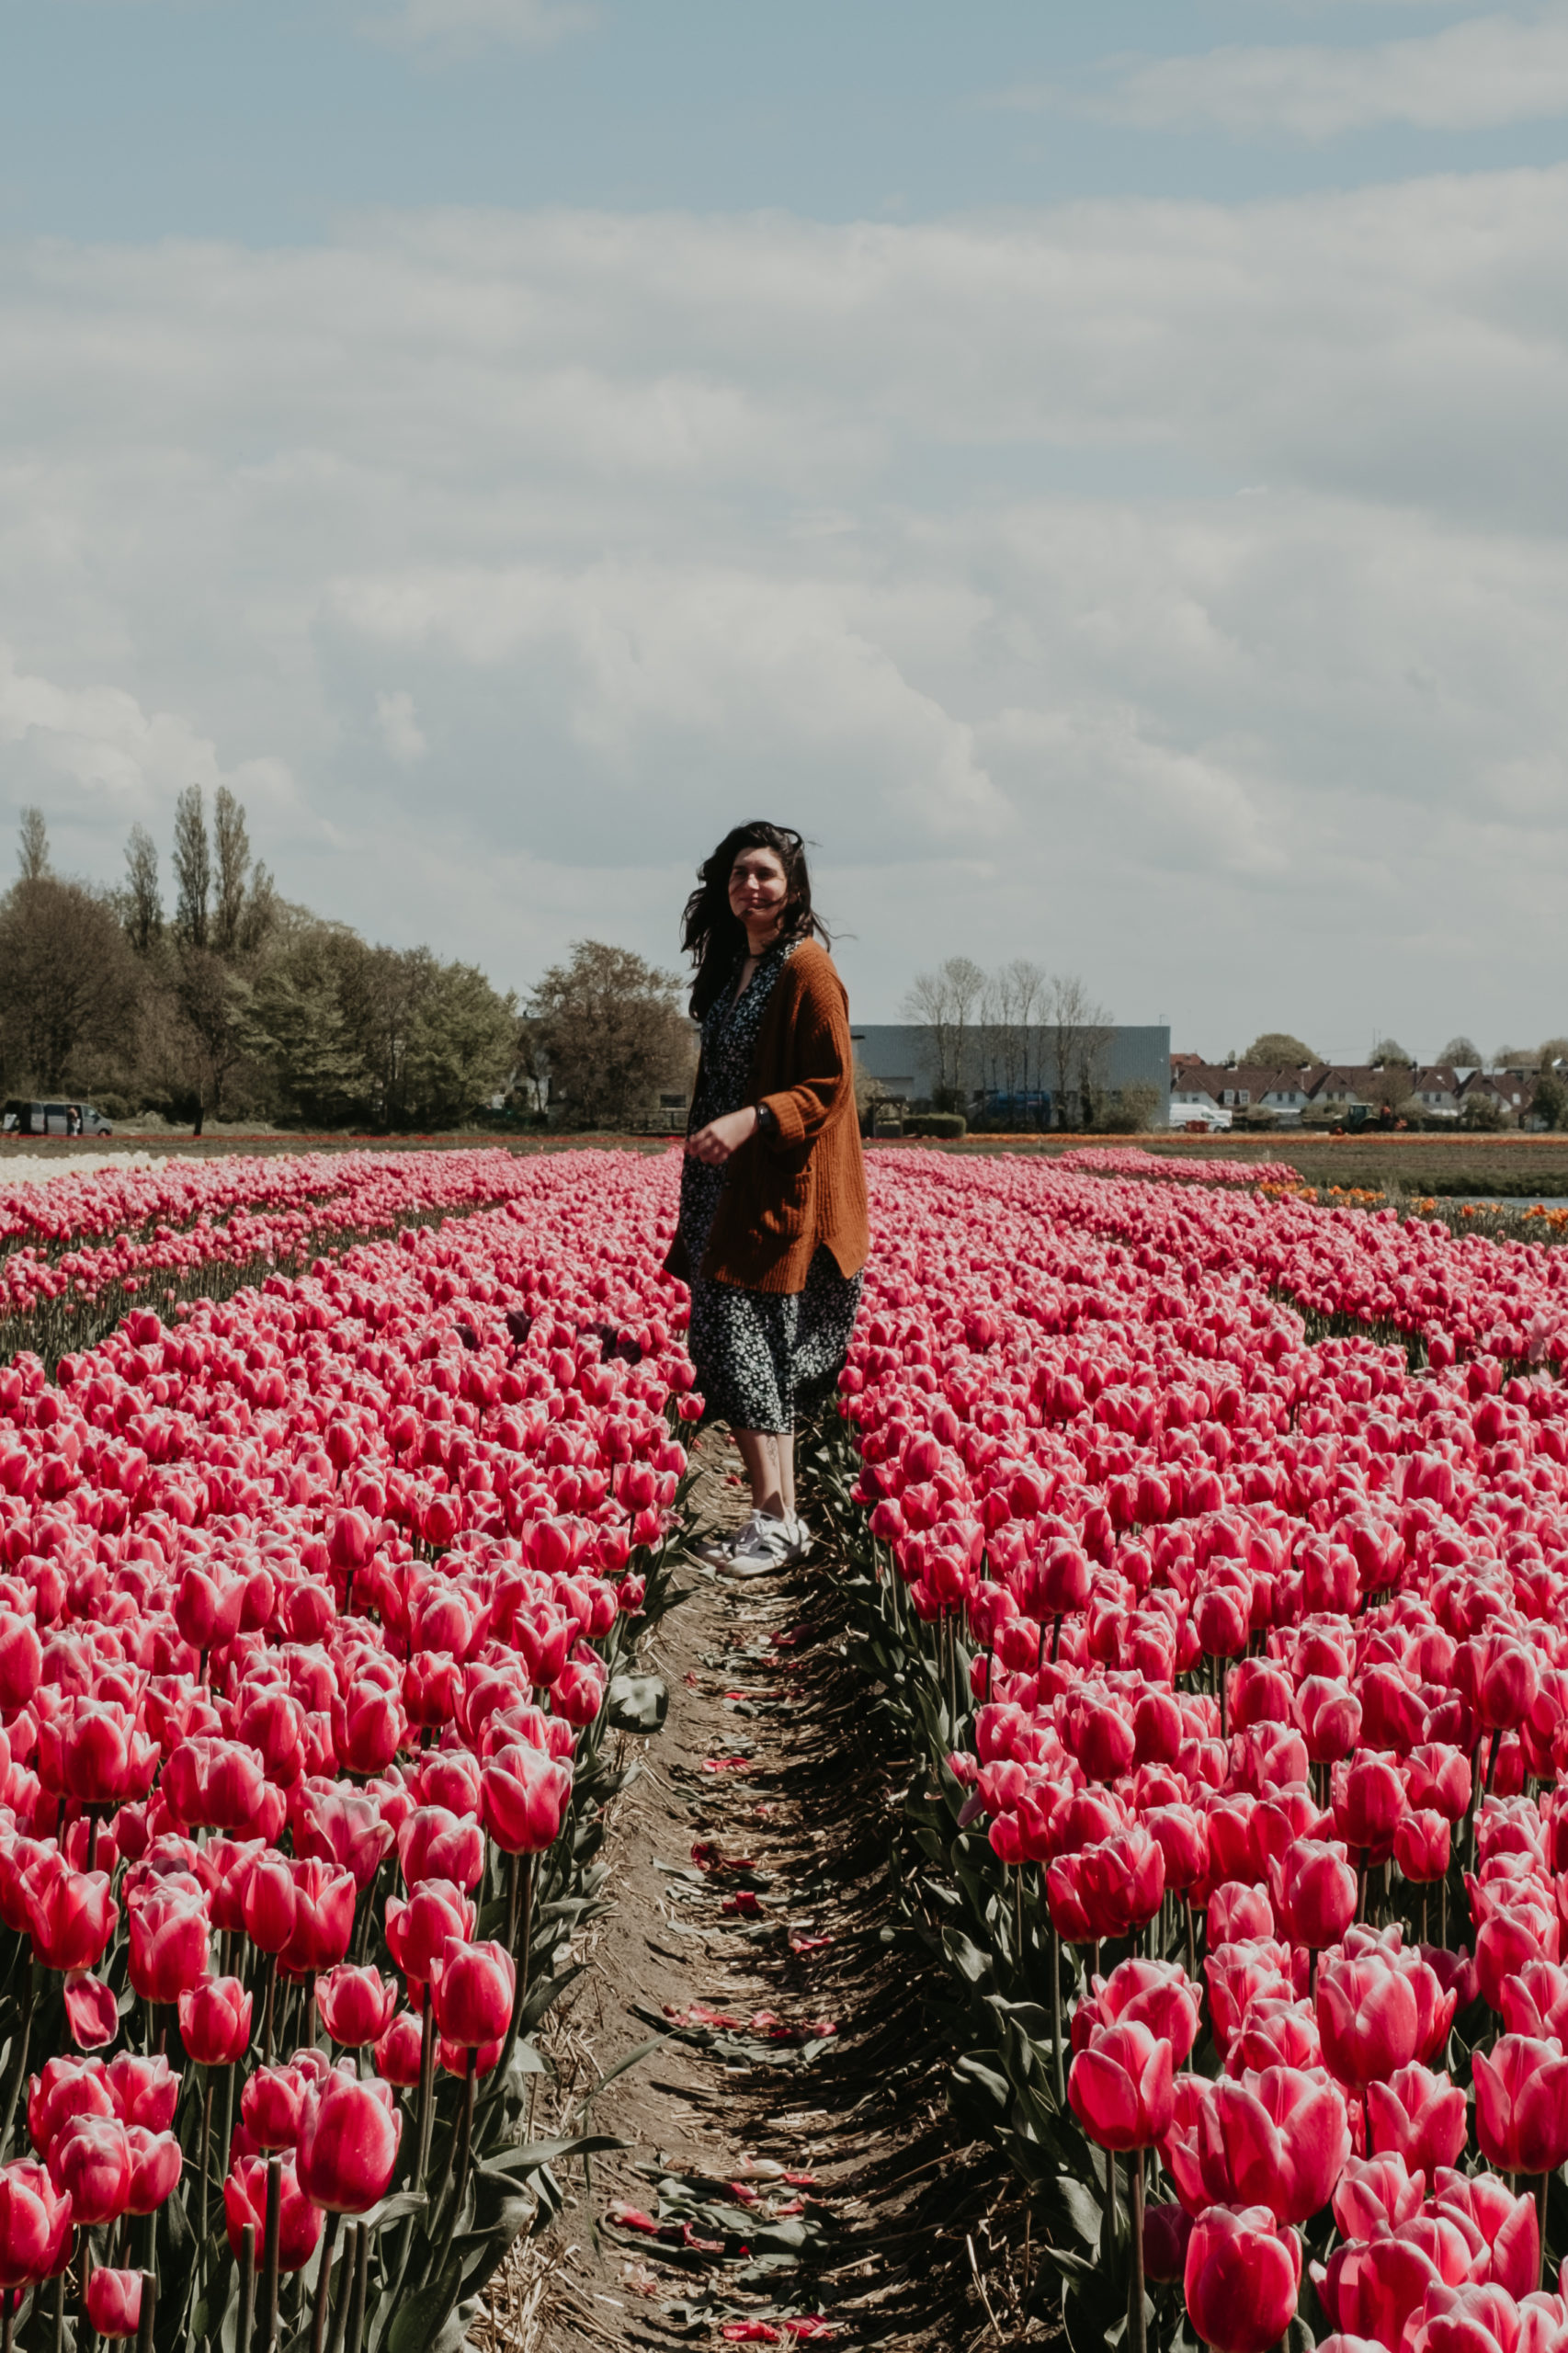 campo de tulipas rosa com uma mulher ao centro, virada um pouco de lado, com cabelos esvoaçantes ao vento, um vestido de fundo preto e com estampa de pequenas flores verdes, e um cardigan terrracota